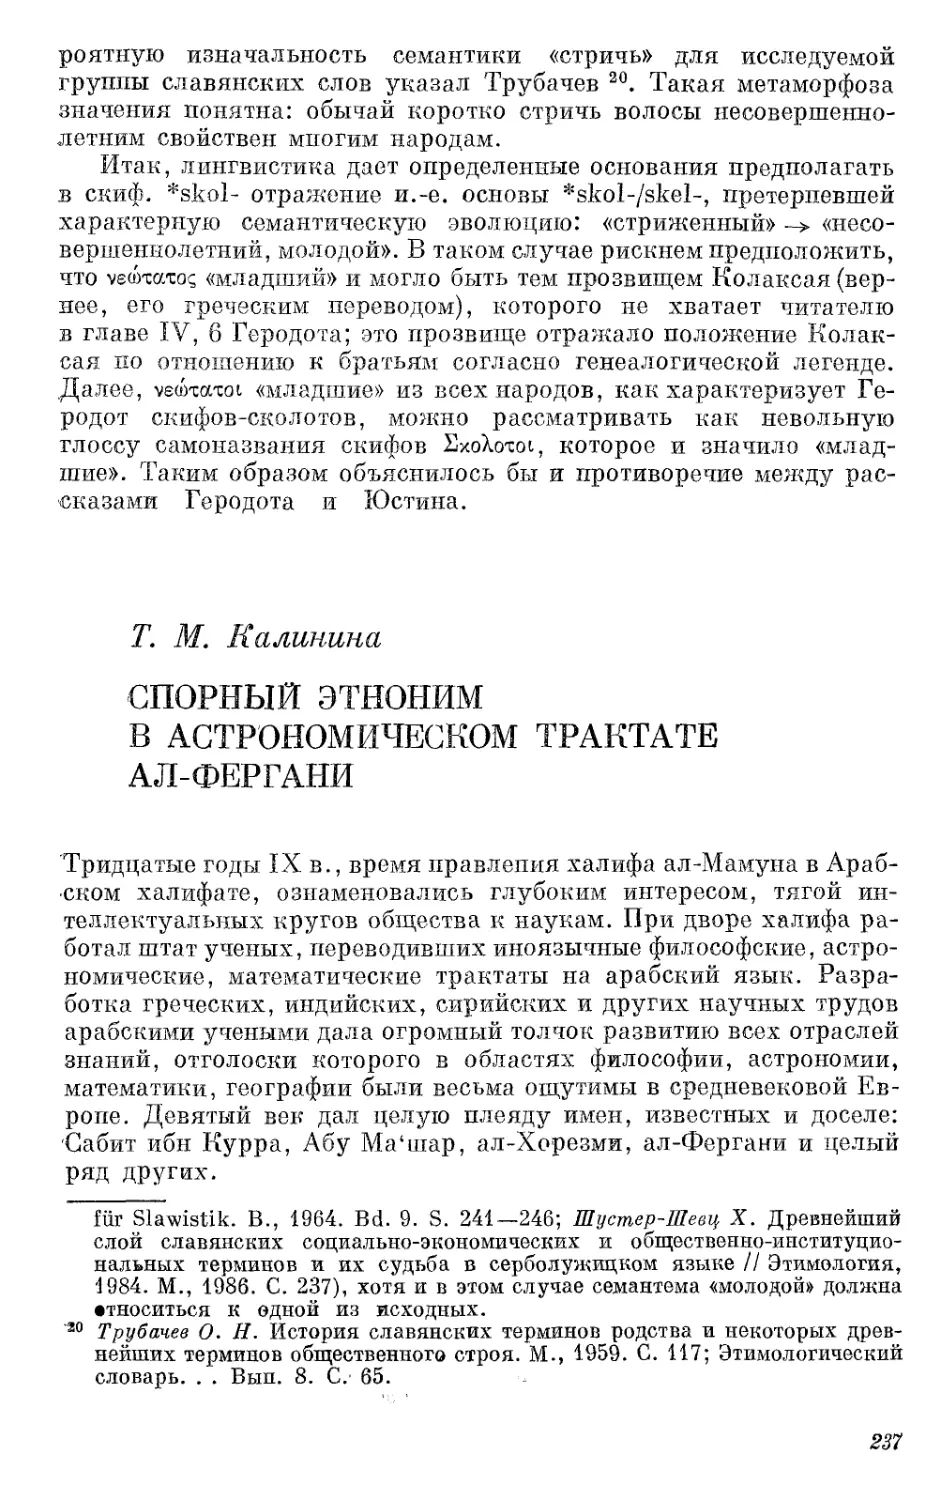 Калинина Т.М. Спорный этноним в астрономическом трактате ал-Фергани